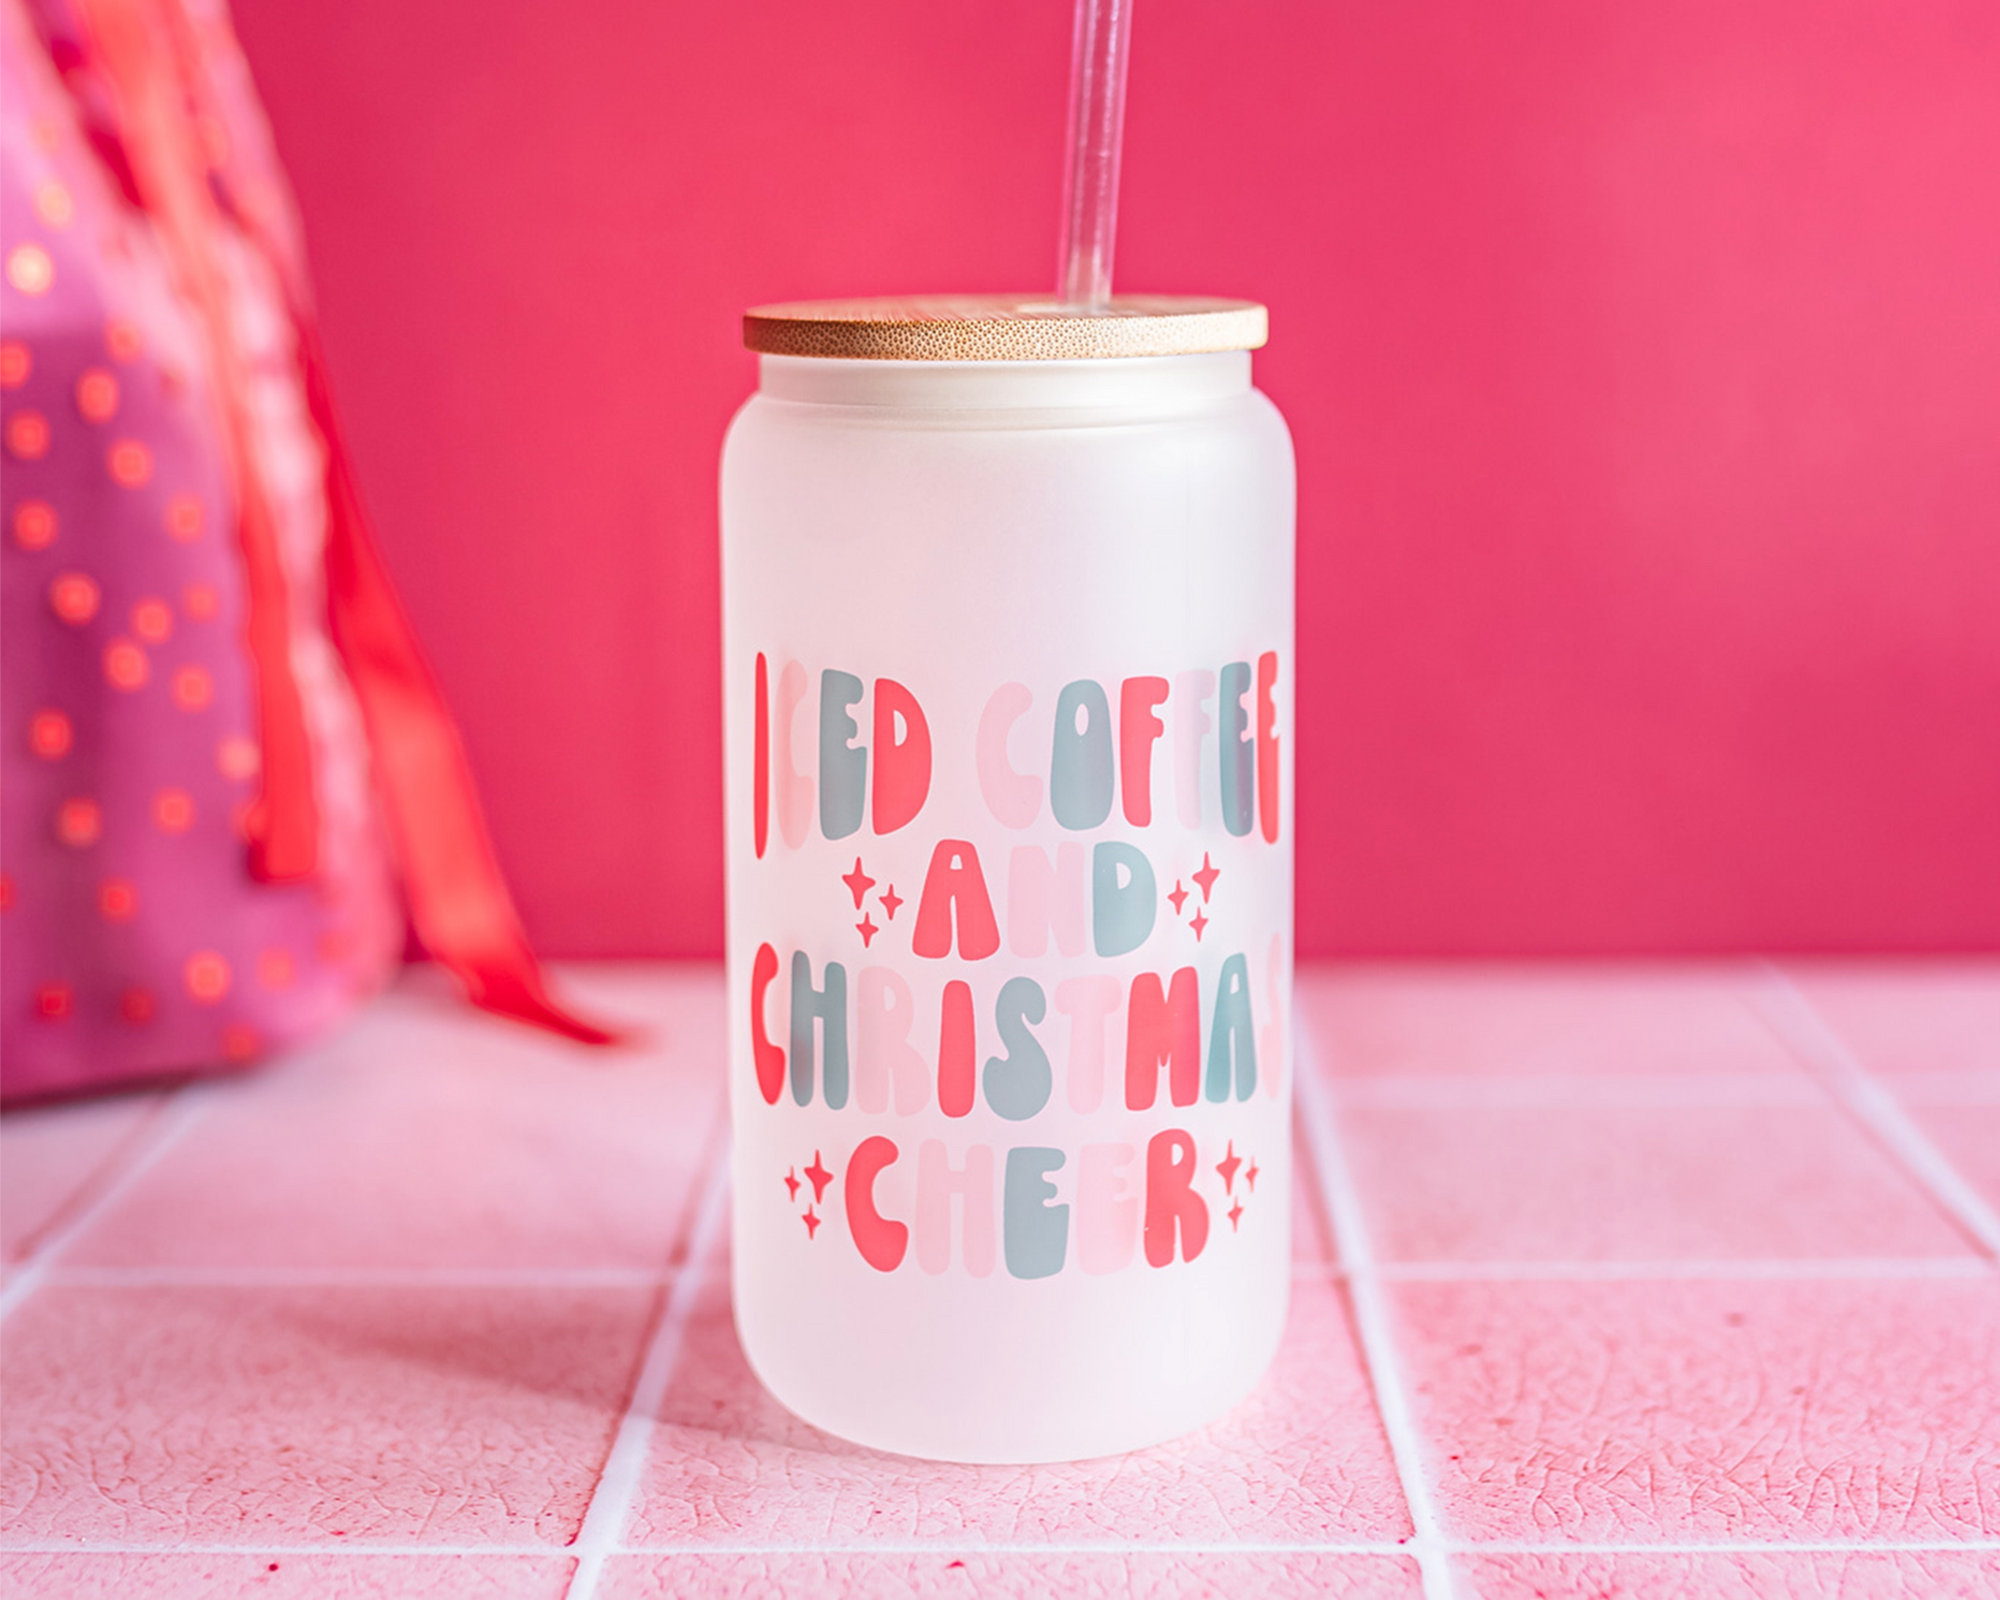 All I want for Christmas Glass mug – Giftshopbyana